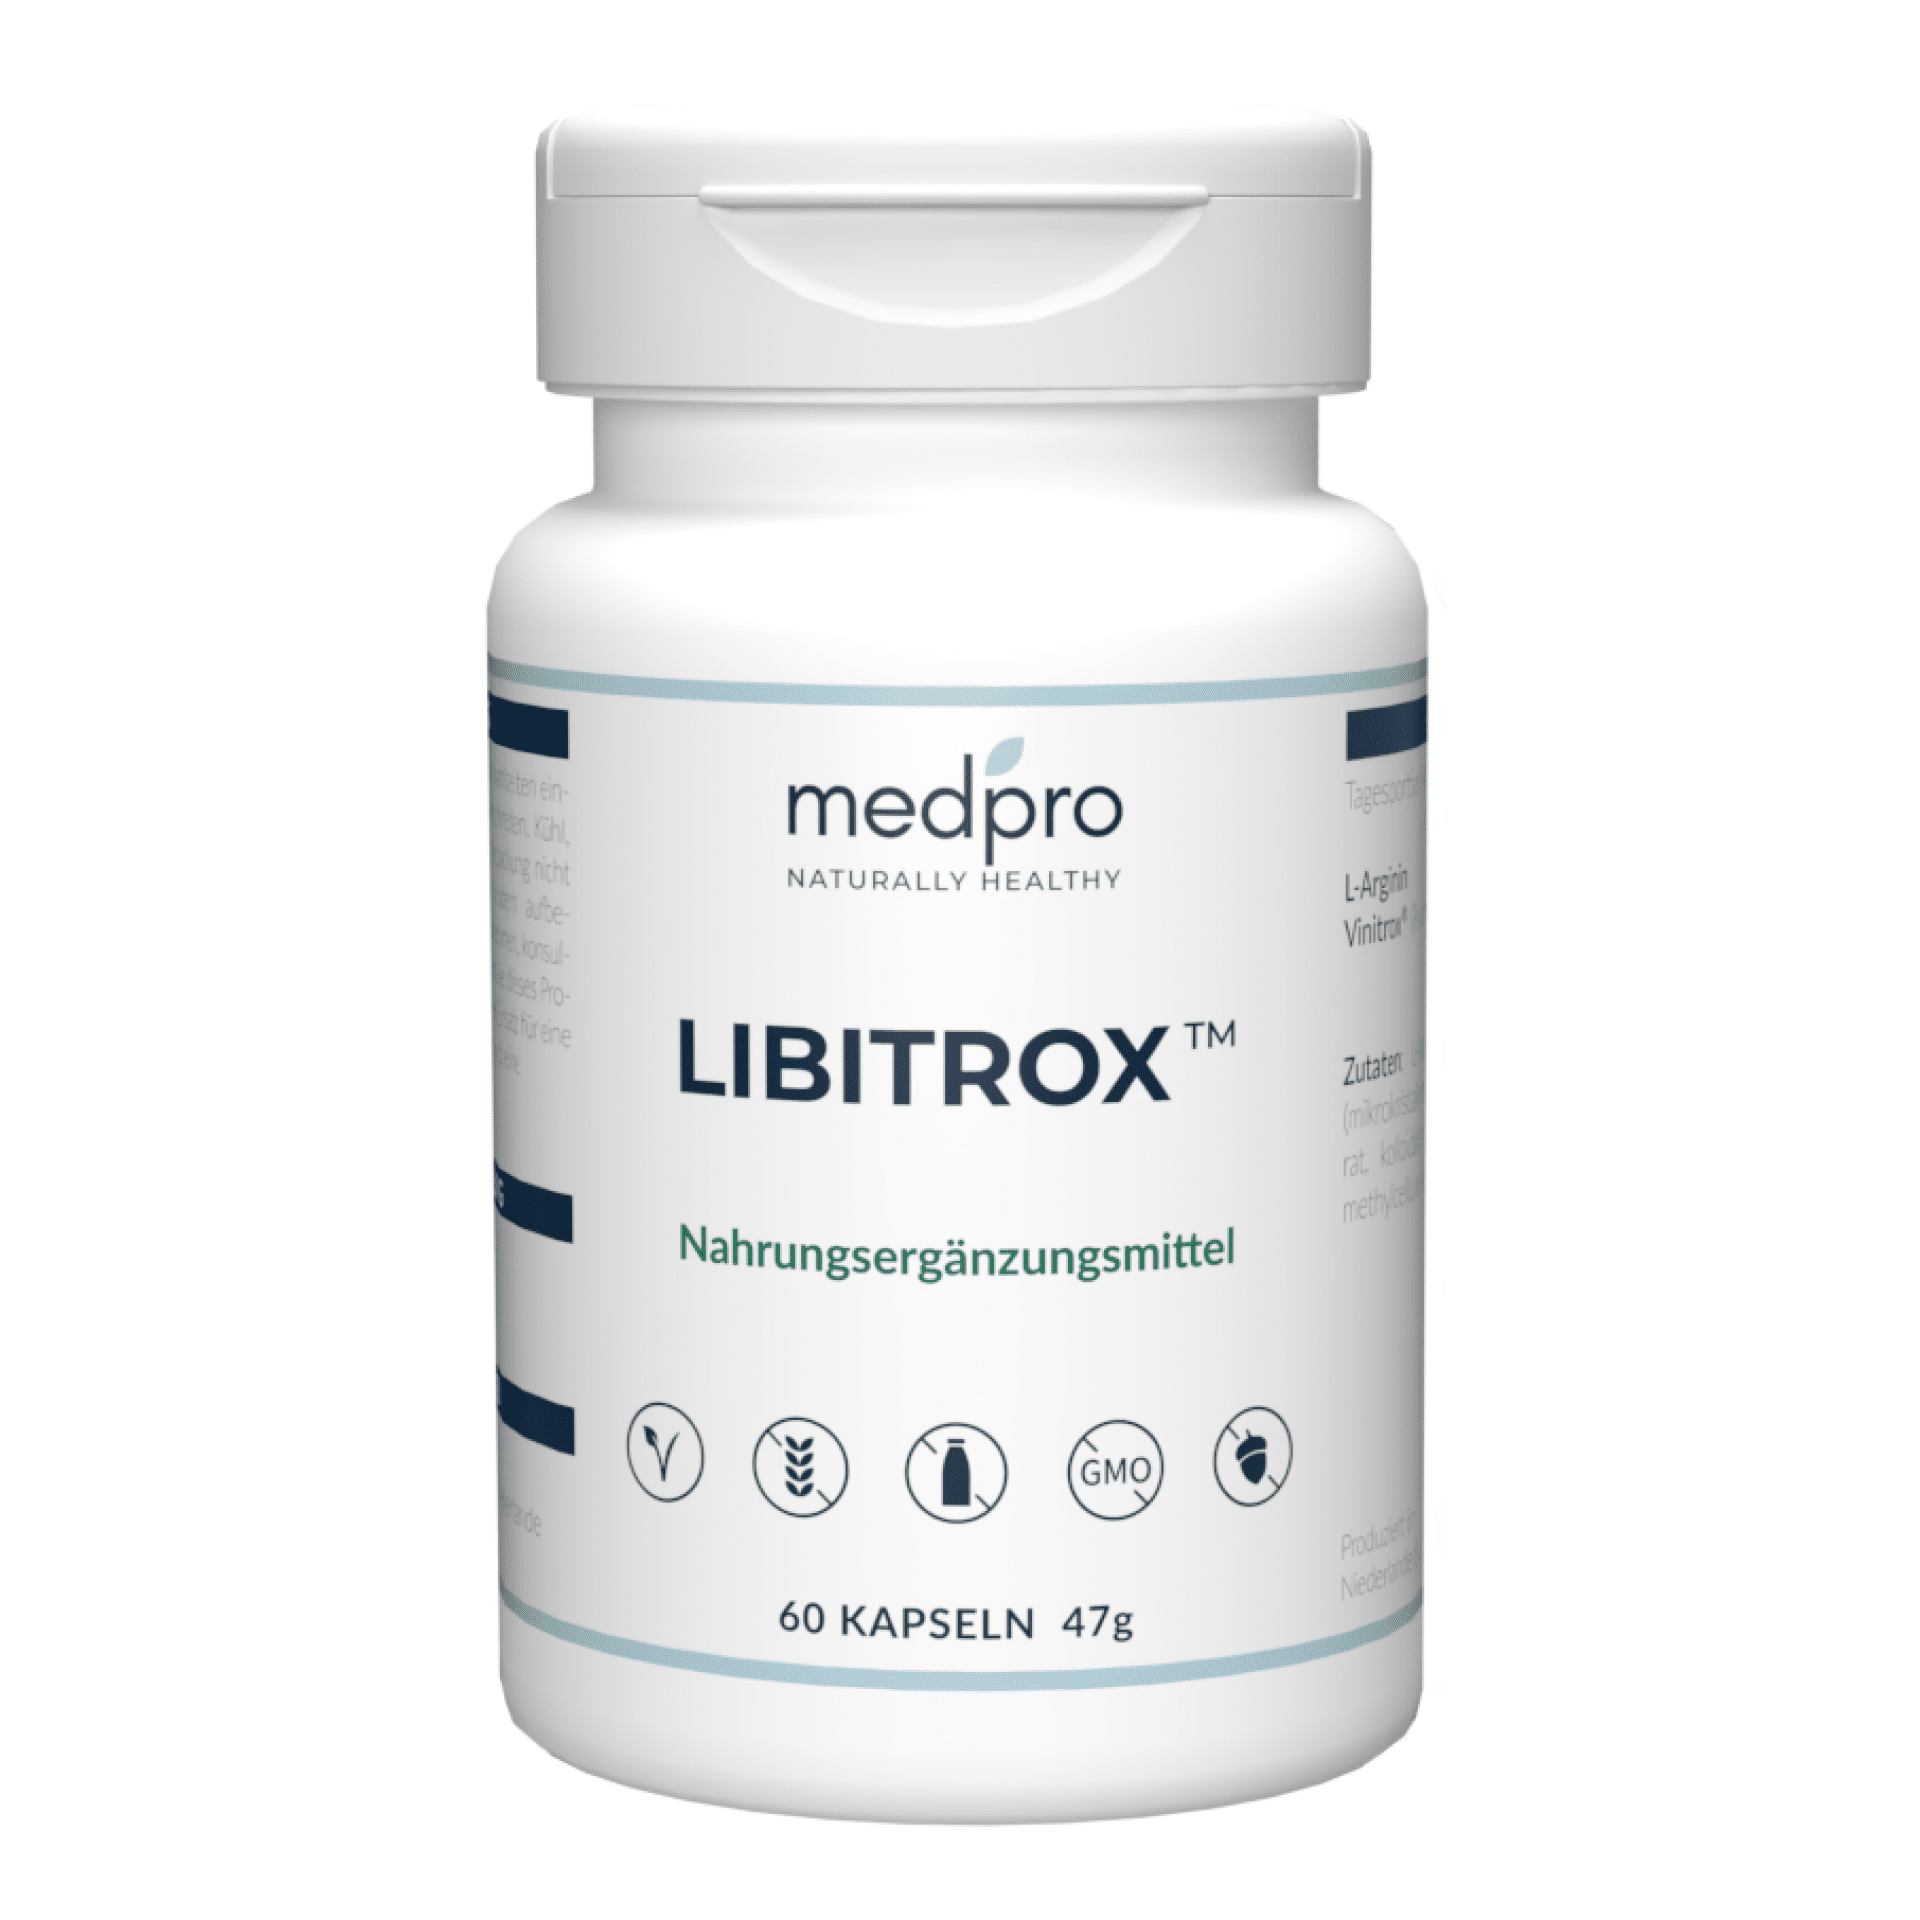 Libitrox tablet bottle